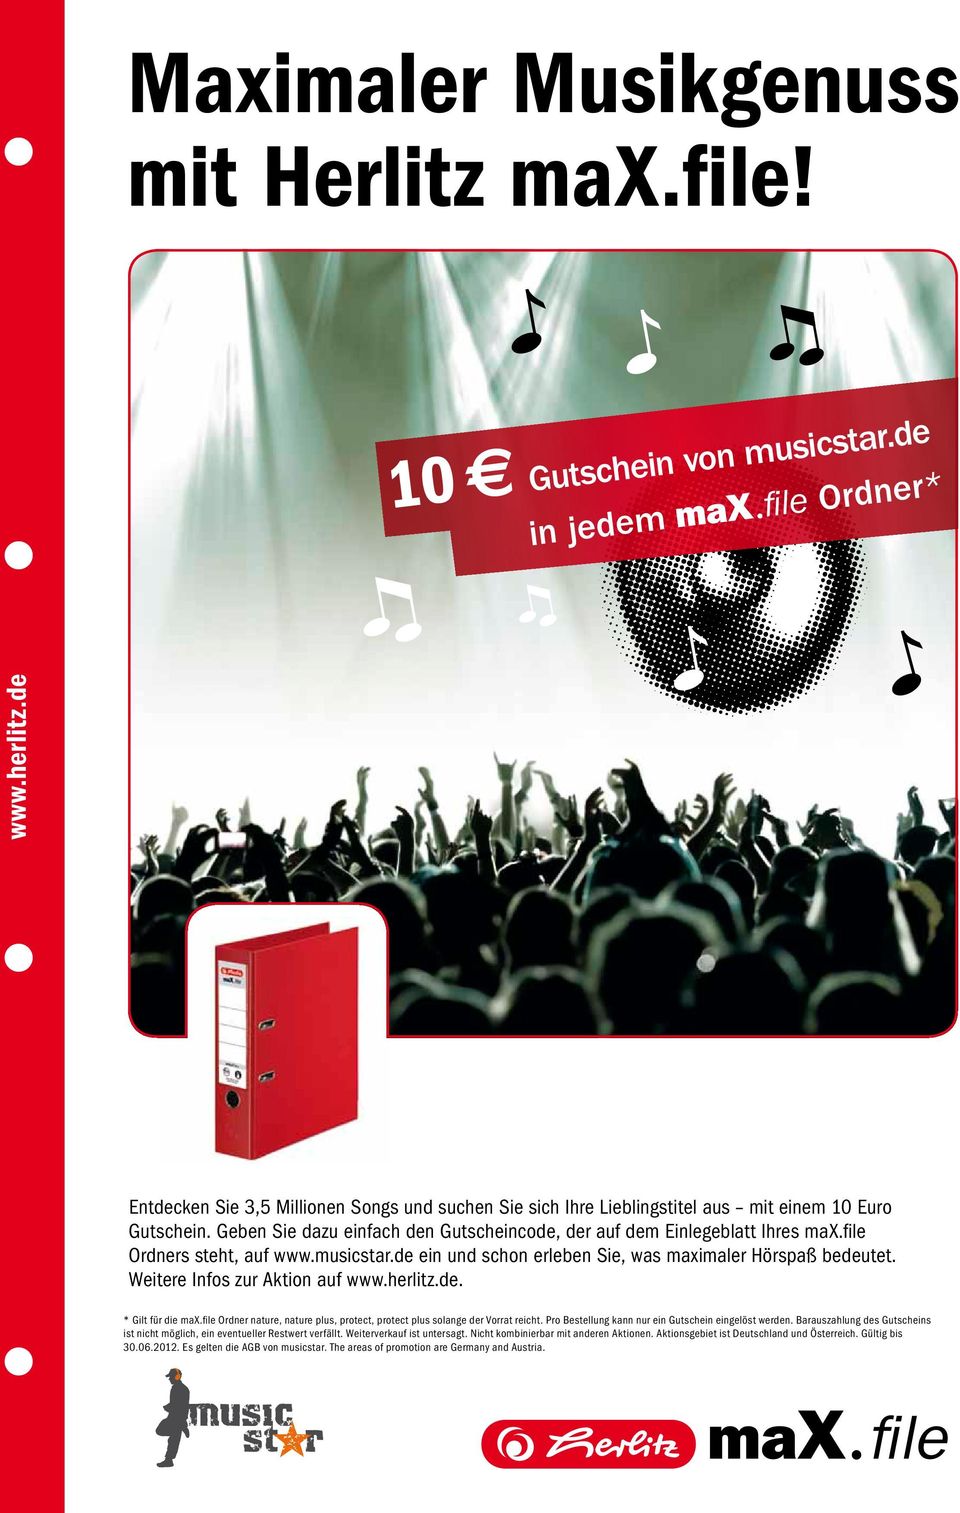 file Ordners steht, auf www.musicstar.de ein und schon erleben Sie, was maximaler Hörspaß bedeutet. Weitere Infos zur Aktion auf www.herlitz.de. * Gilt für die max.